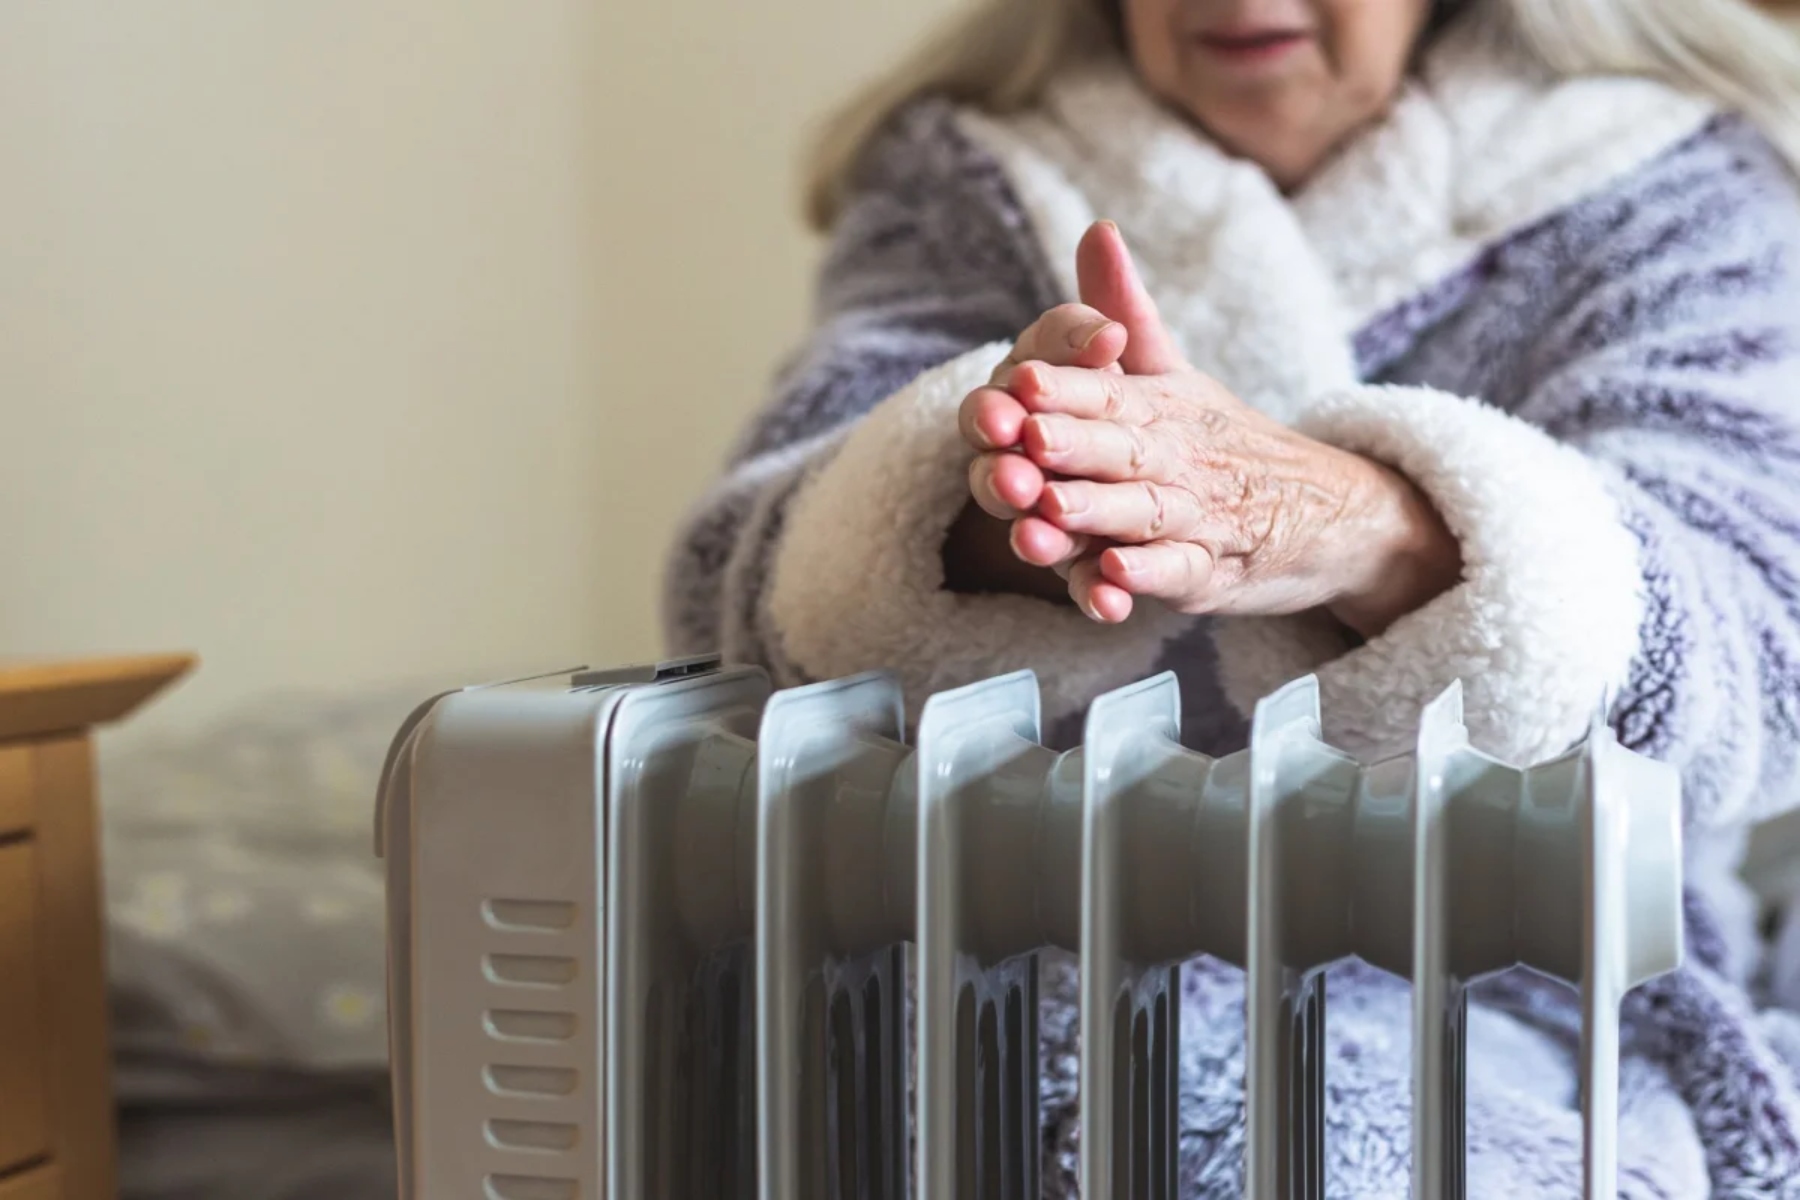 Βρετανία: Ανησυχία για τους ηλικιωμένους που ζουν μόνοι τους χωρίς κεντρική θέρμανση